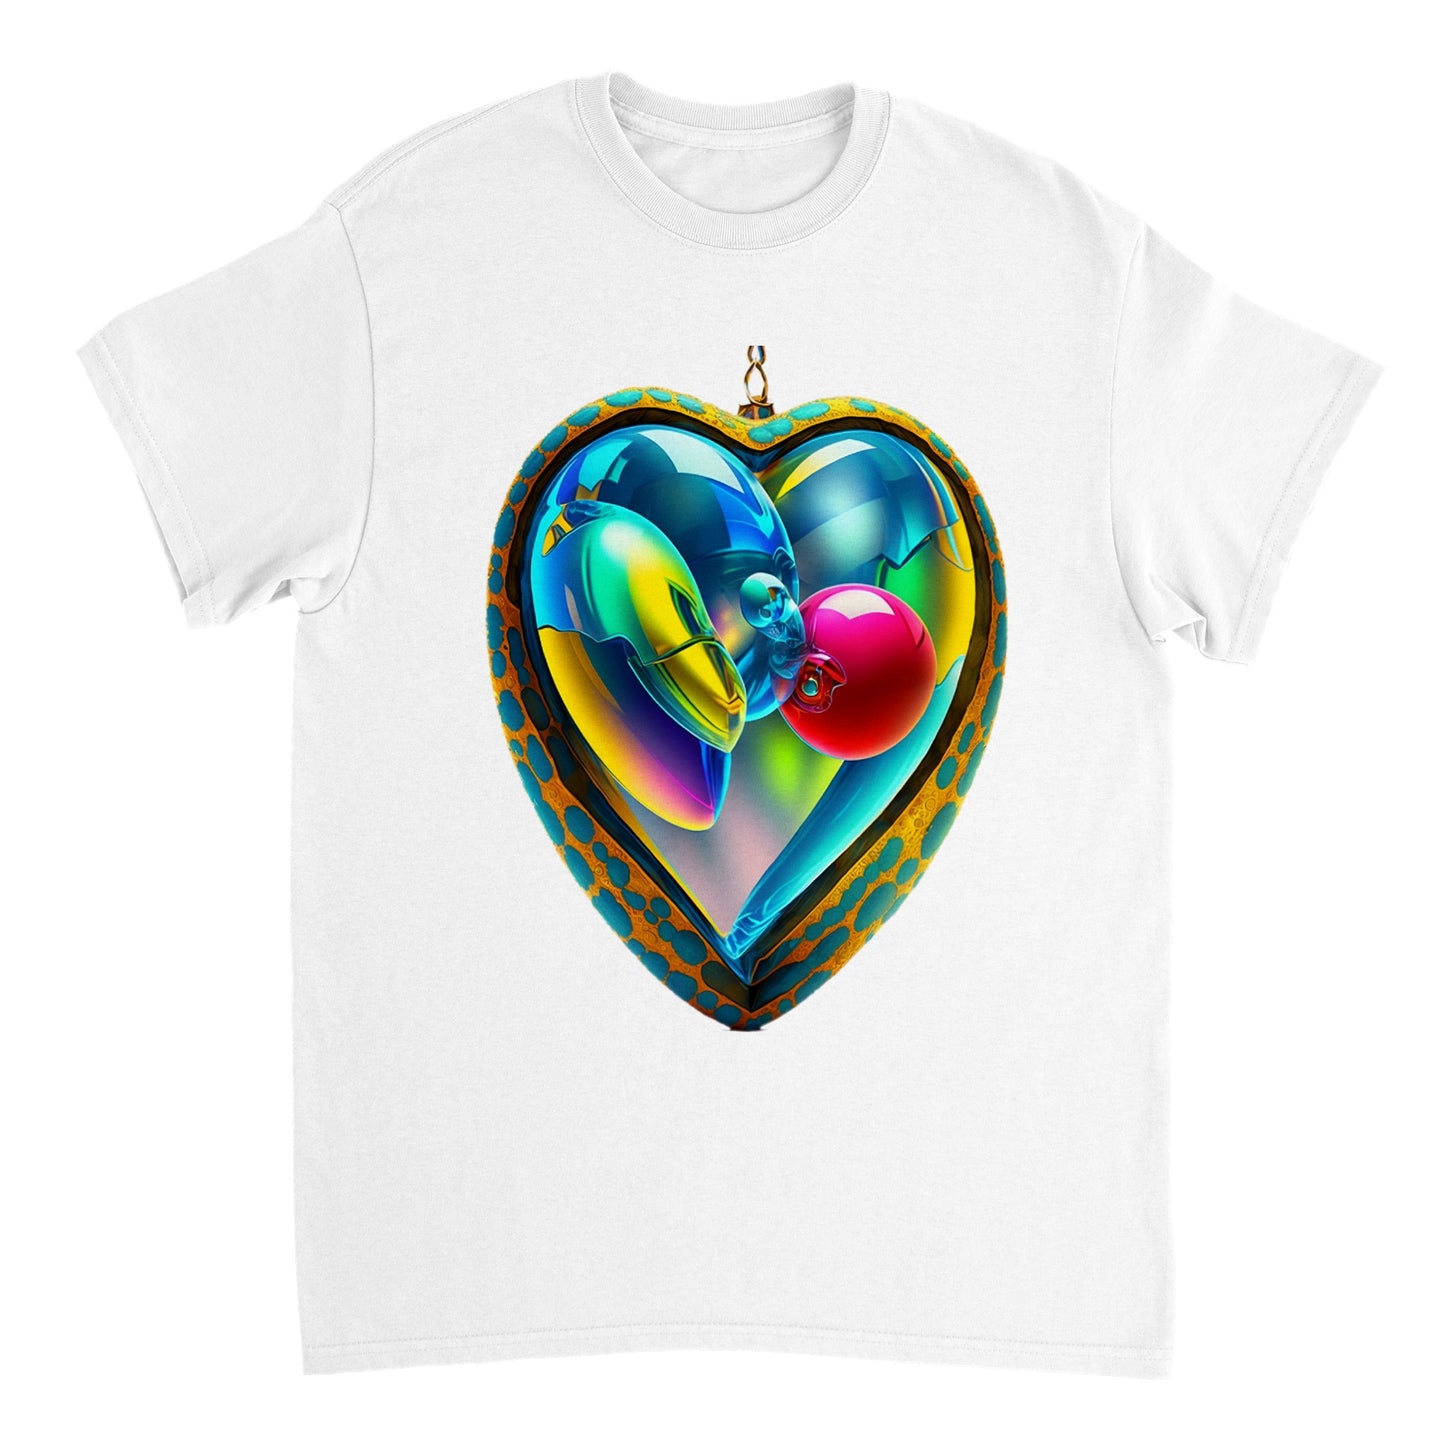 Love Heart - Heavyweight Unisex Crewneck T-shirt 31